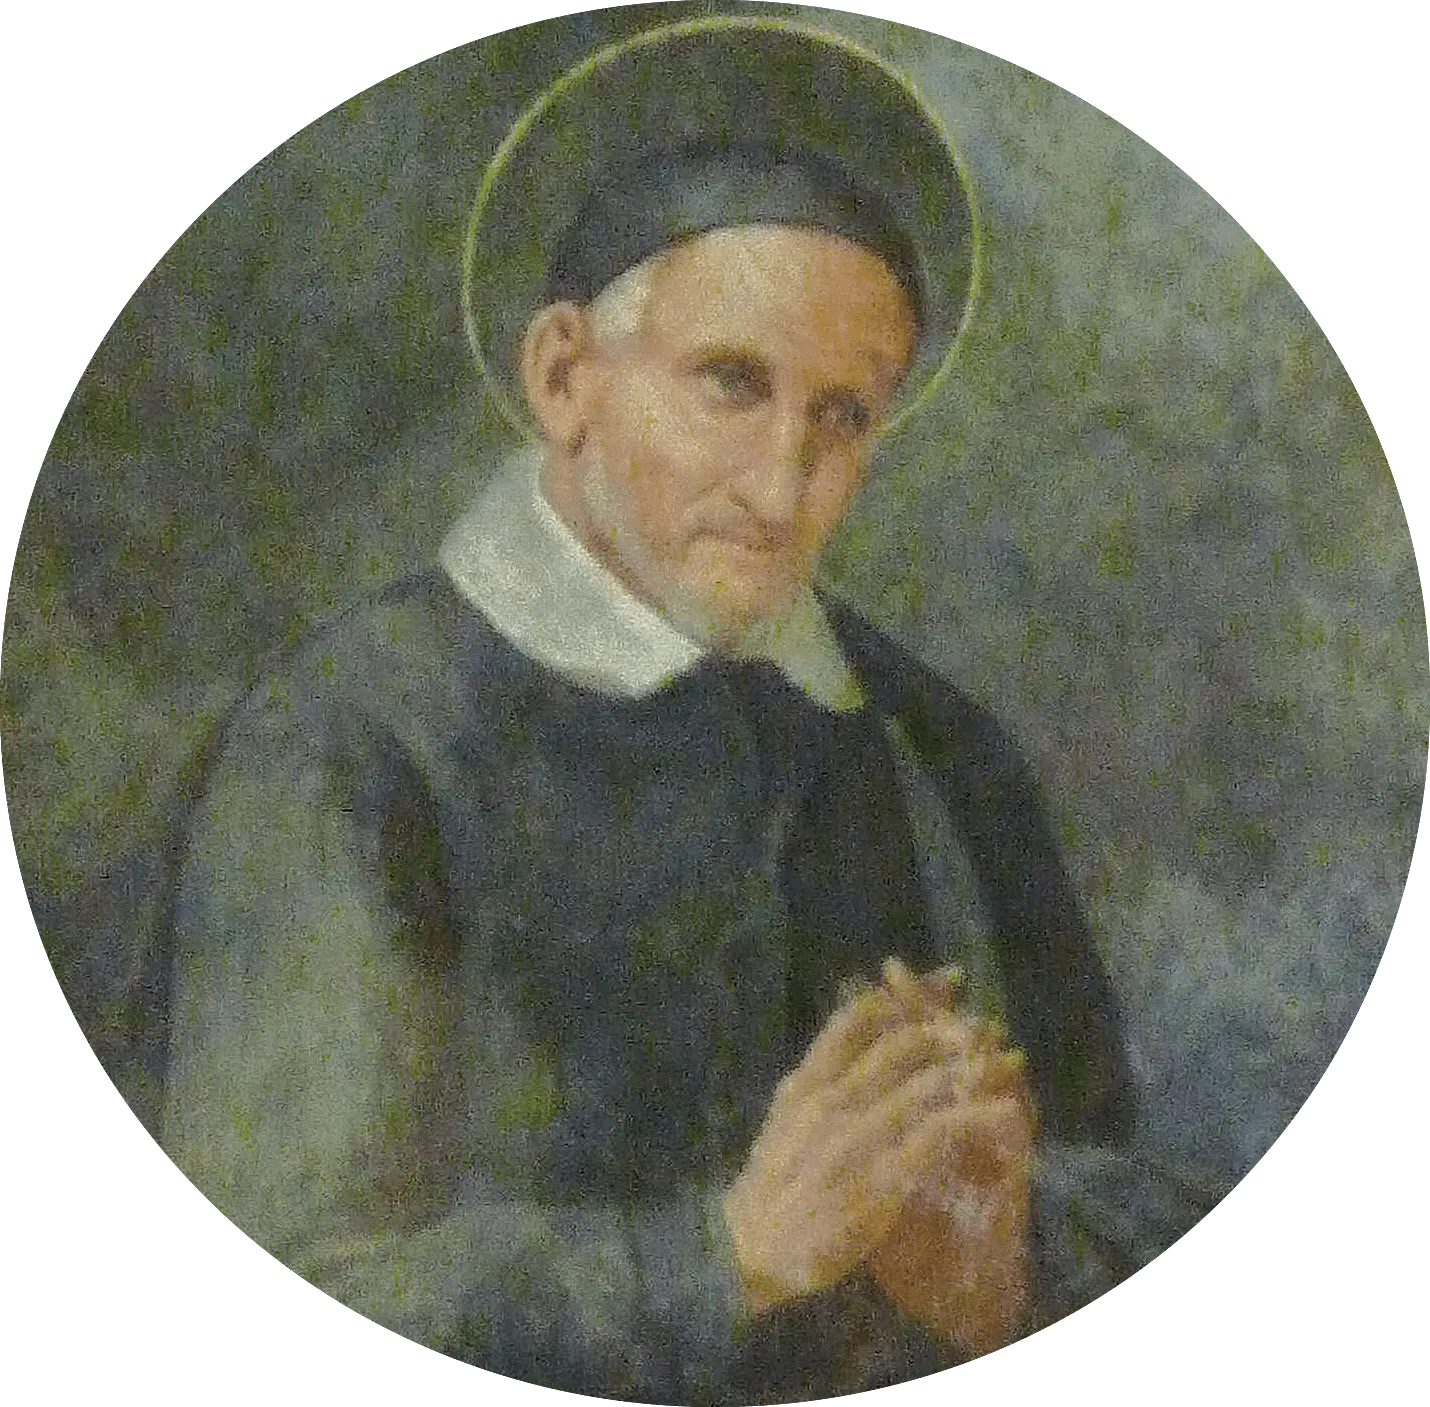 Saint Vincent de Paul (1581-1660)